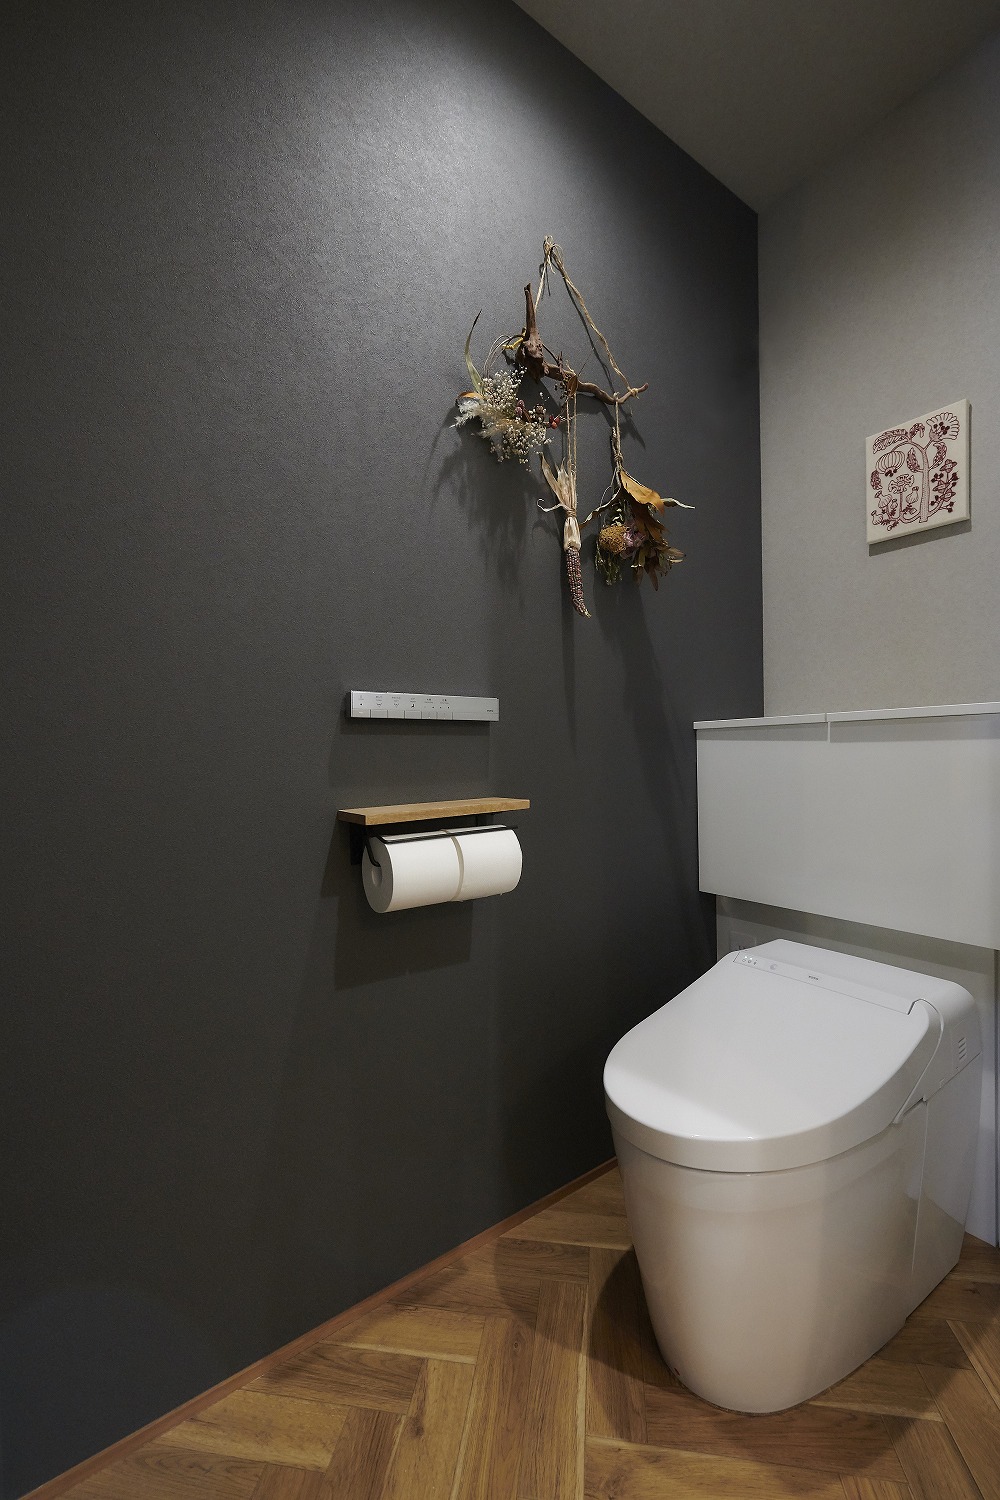 ヘリンボーン柄のお洒落なトイレの画像